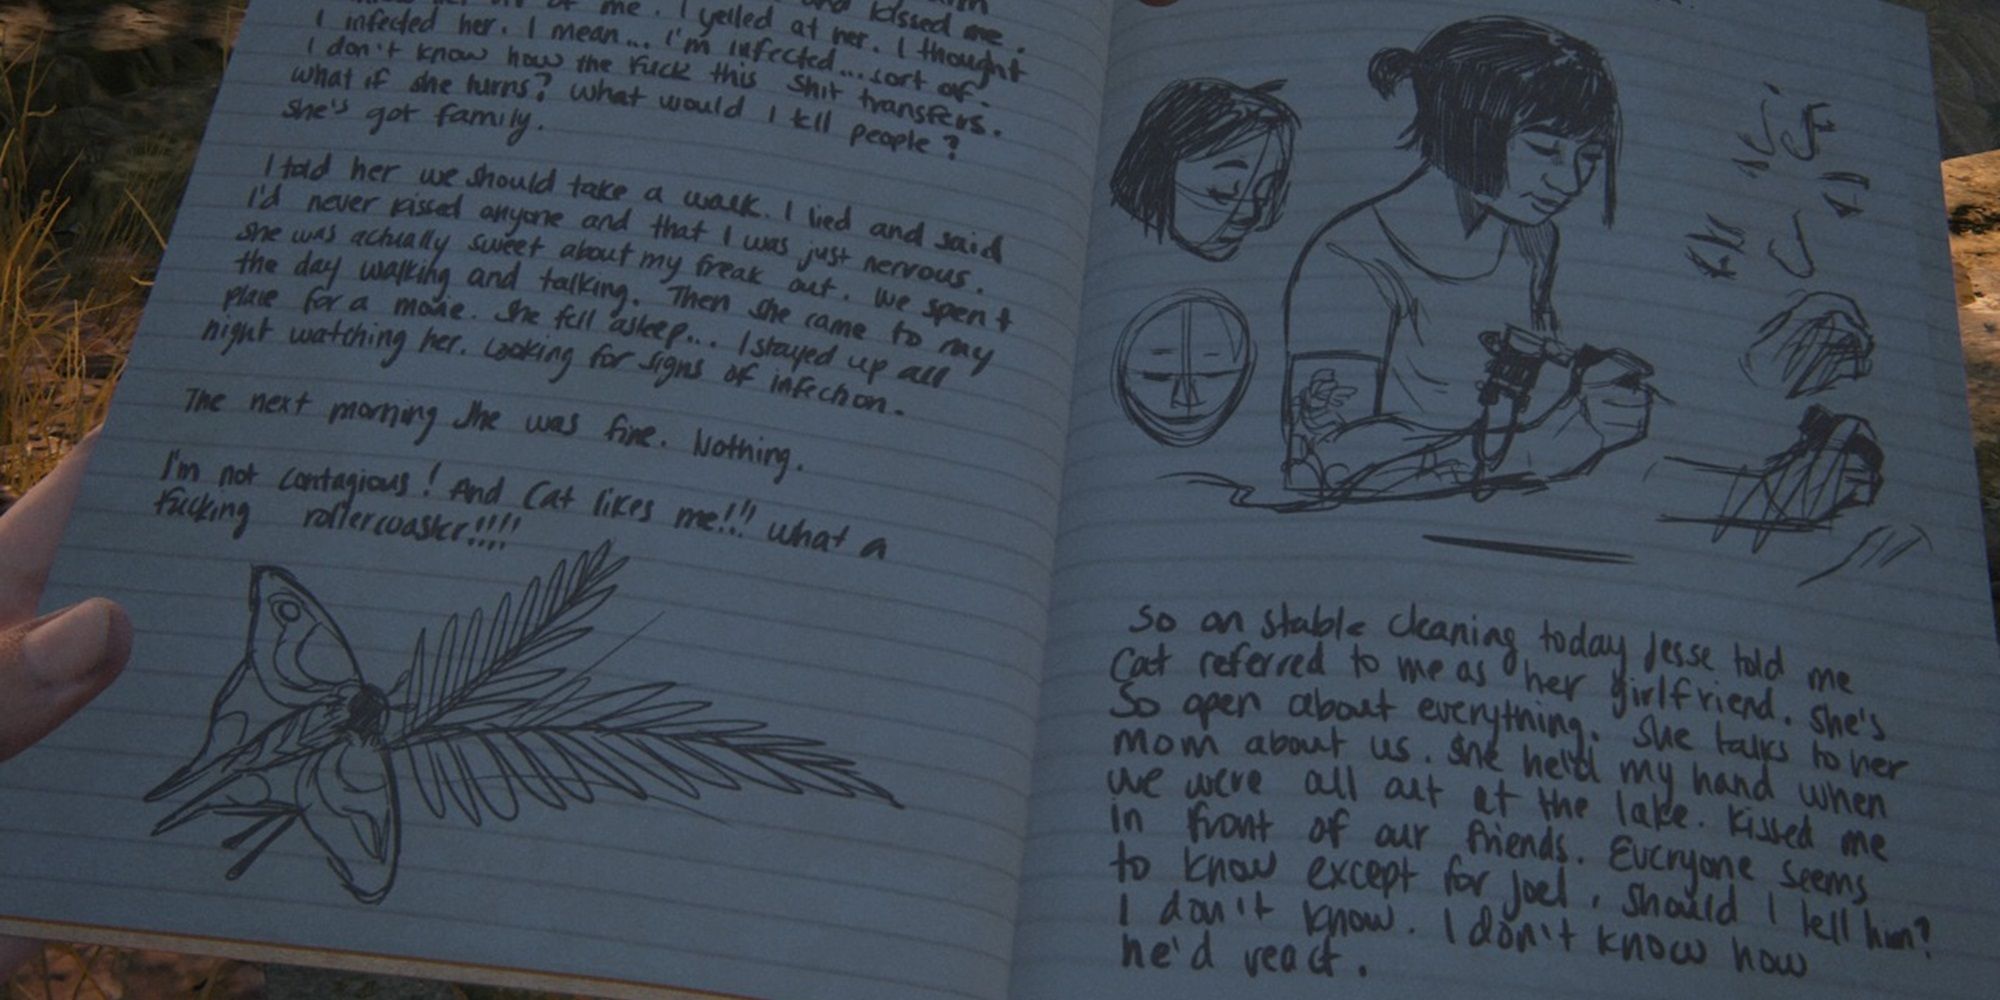 Catatan jurnal Ellie tentang Cat di The Last of Us Part II